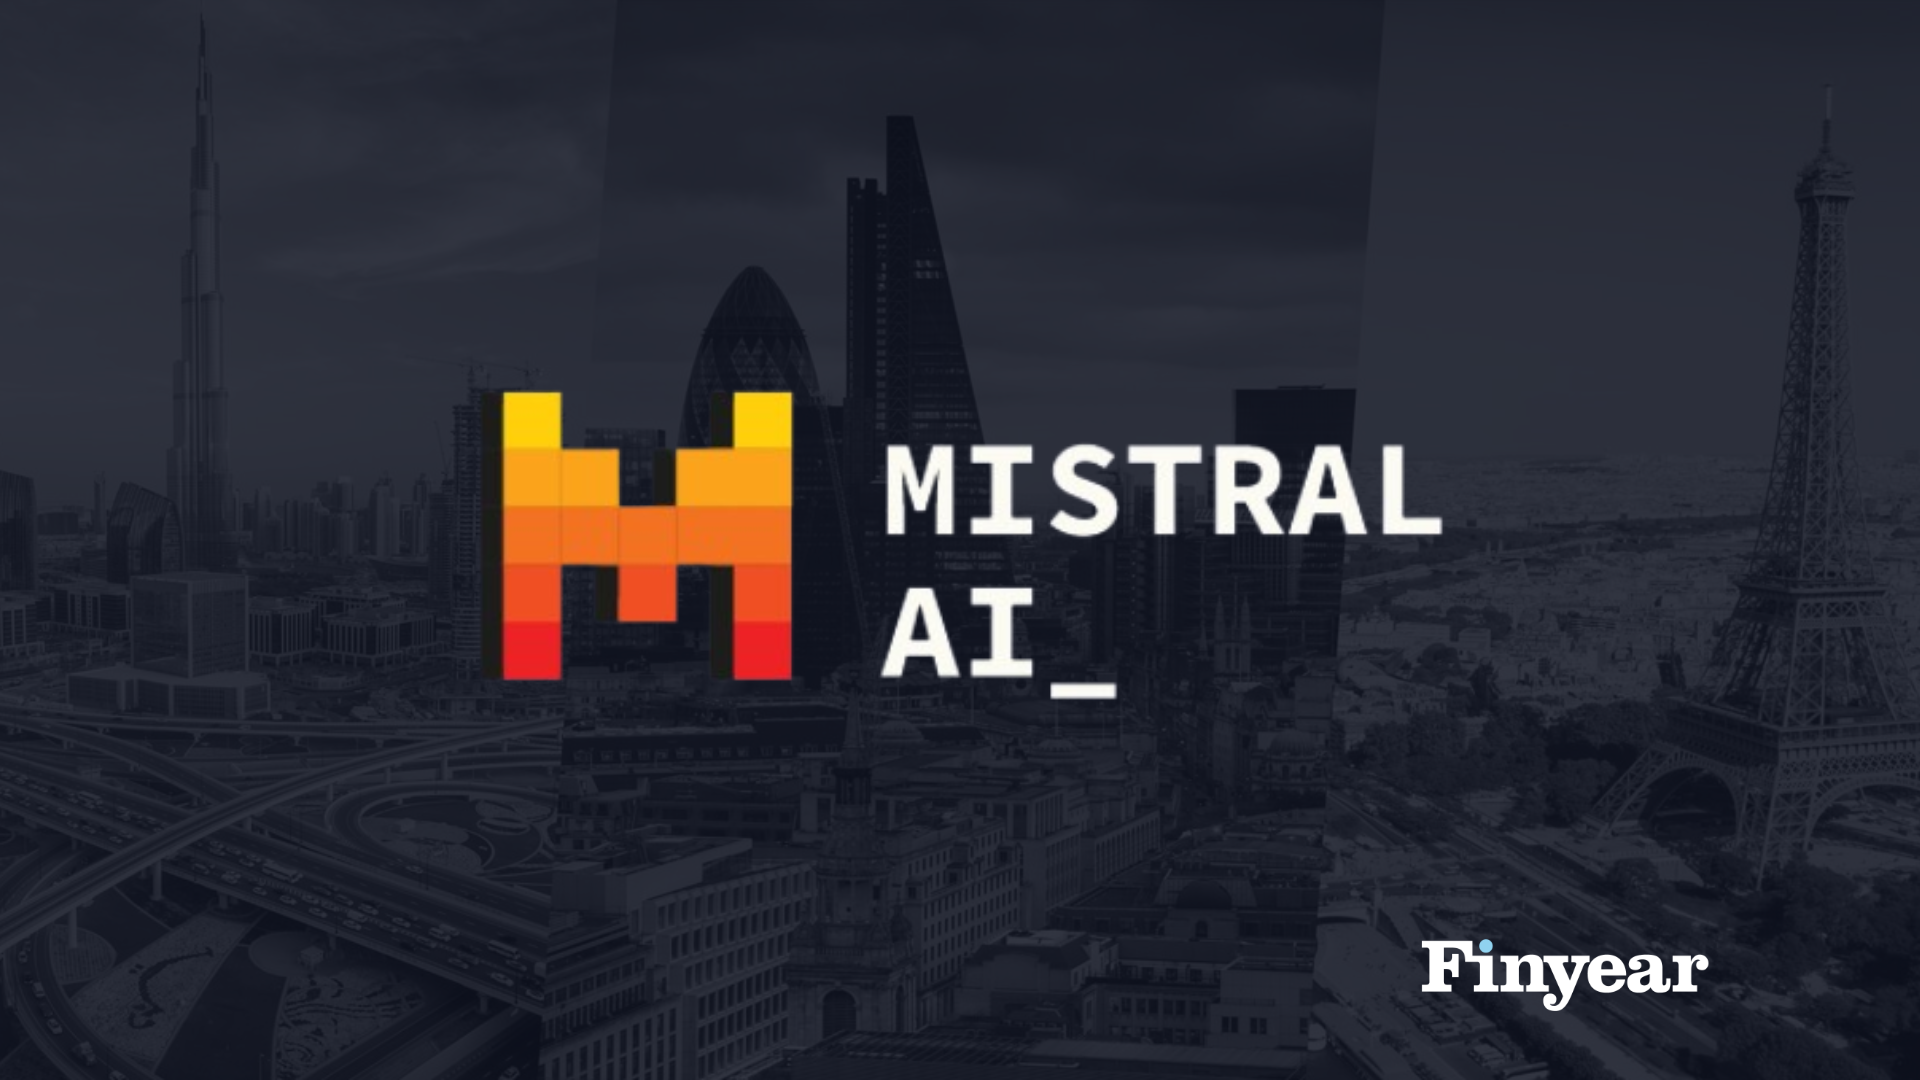 Mistral.AI confirme la levée de fonds qui valoriserait l'entreprise presque 6 milliards